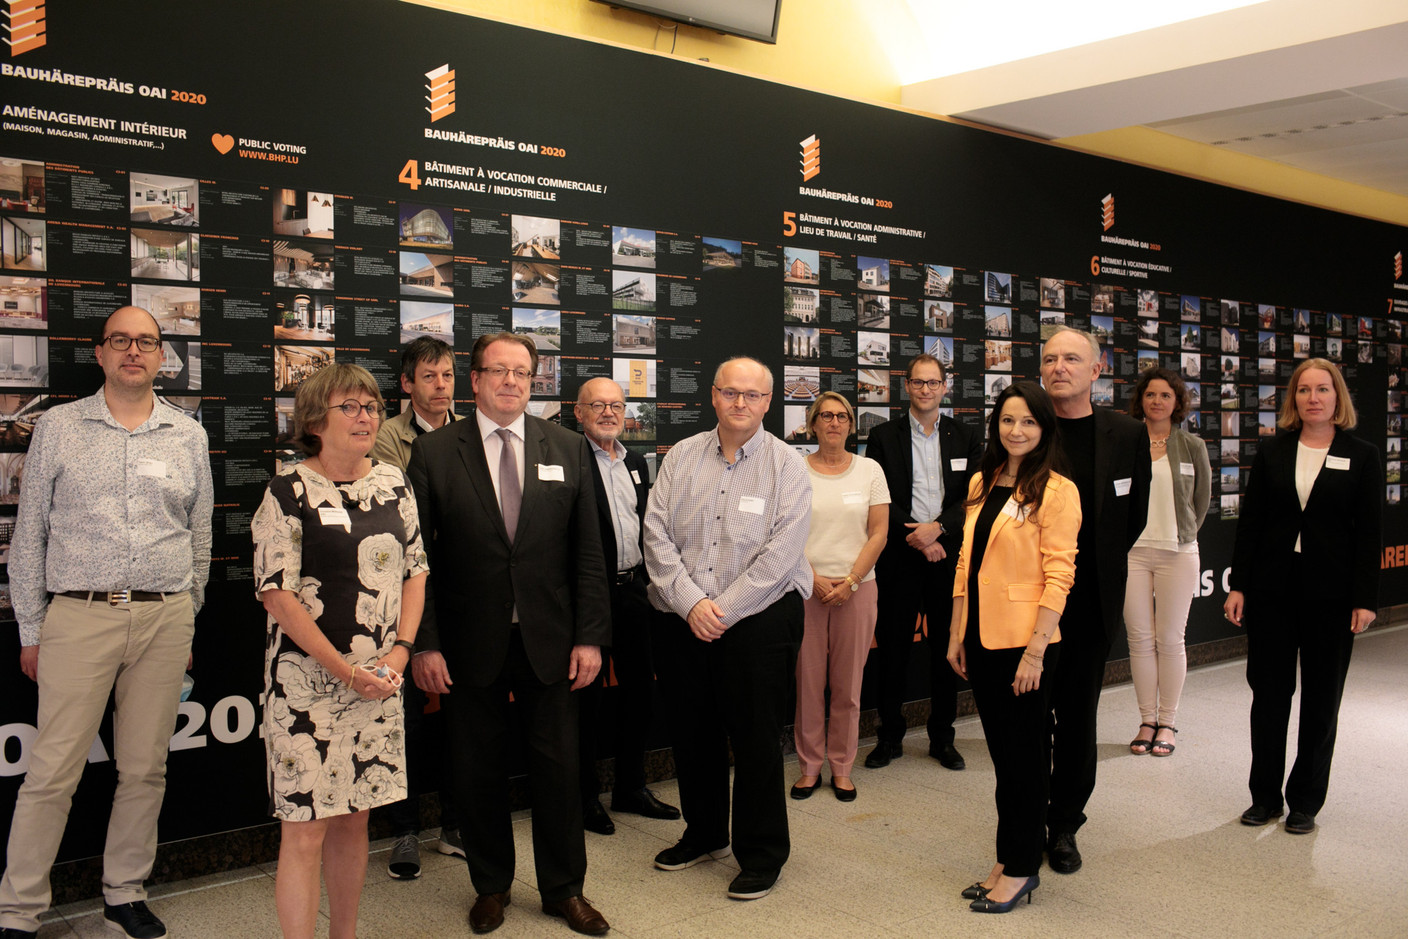 Les membres du jury, avec l’aide de l’équipe de l’OAI, se sont regroupés lundi 6 juillet pour sélectionner les lauréats et nominés du Bauhärepräis OAI 2020. (Photo: Matic Zorman / Maison Moderne)